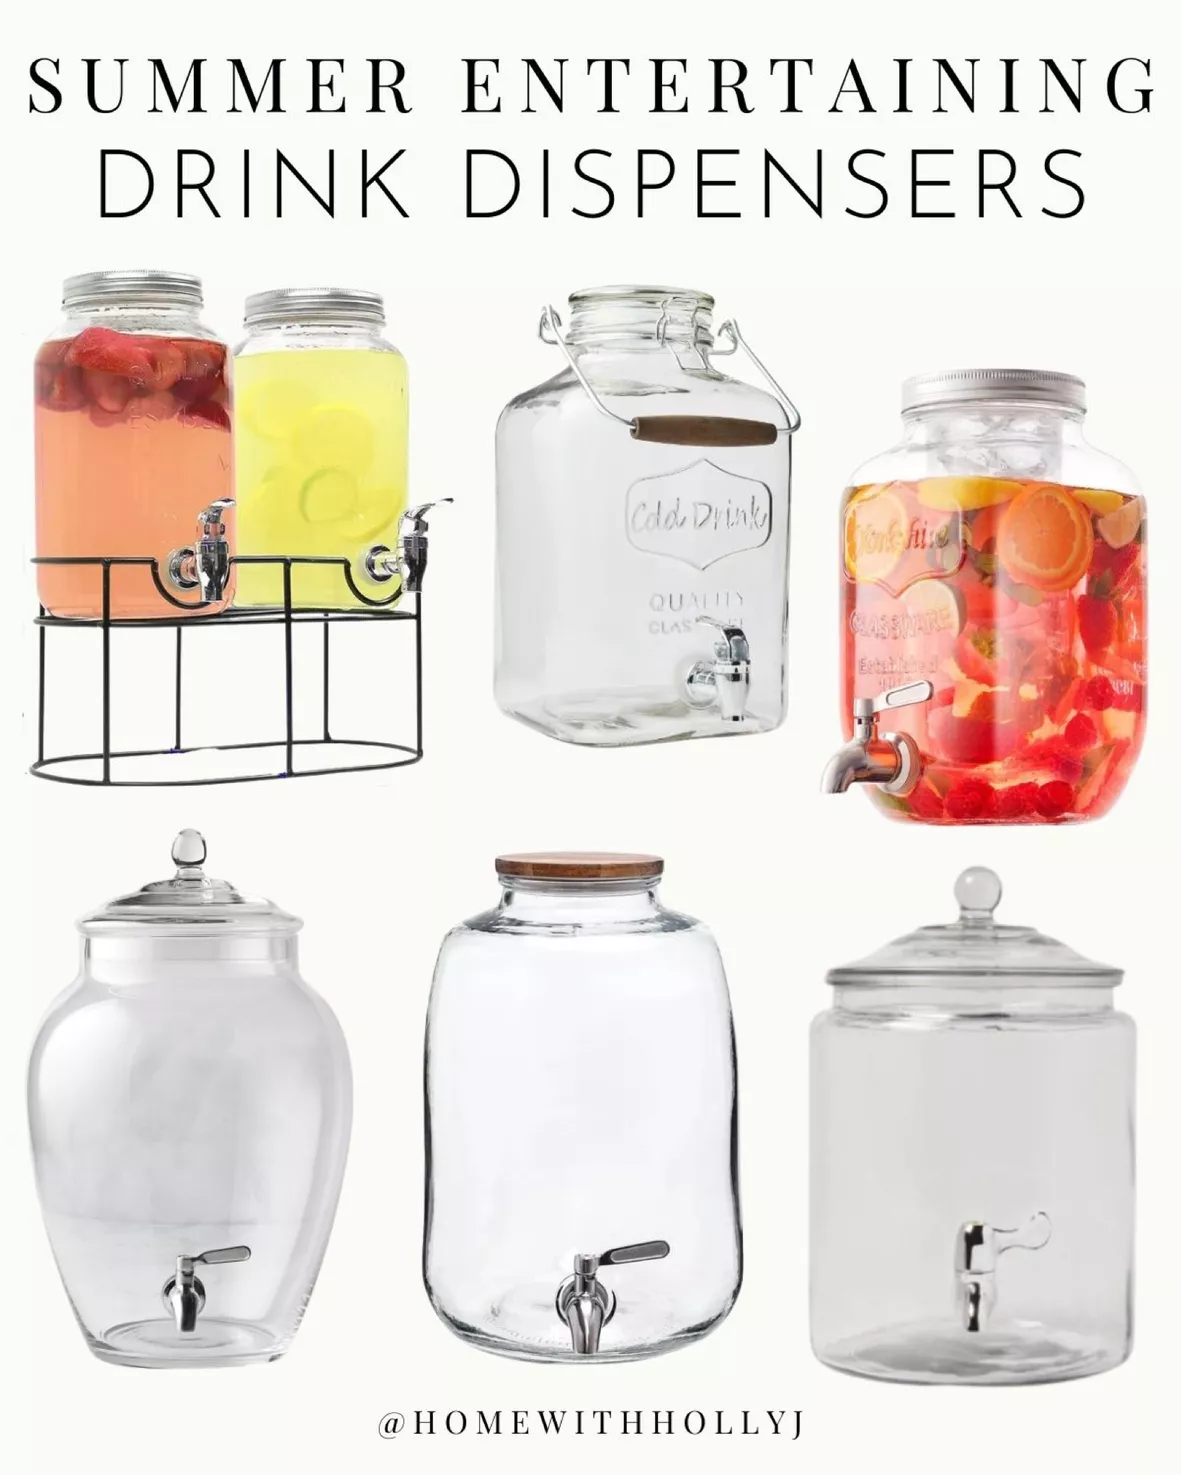 Joyjolt Glass Drink Dispenser, Ice Cylinder, & Fruit Infuser - 1 Gallon  Drink Dispensers For Parties : Target